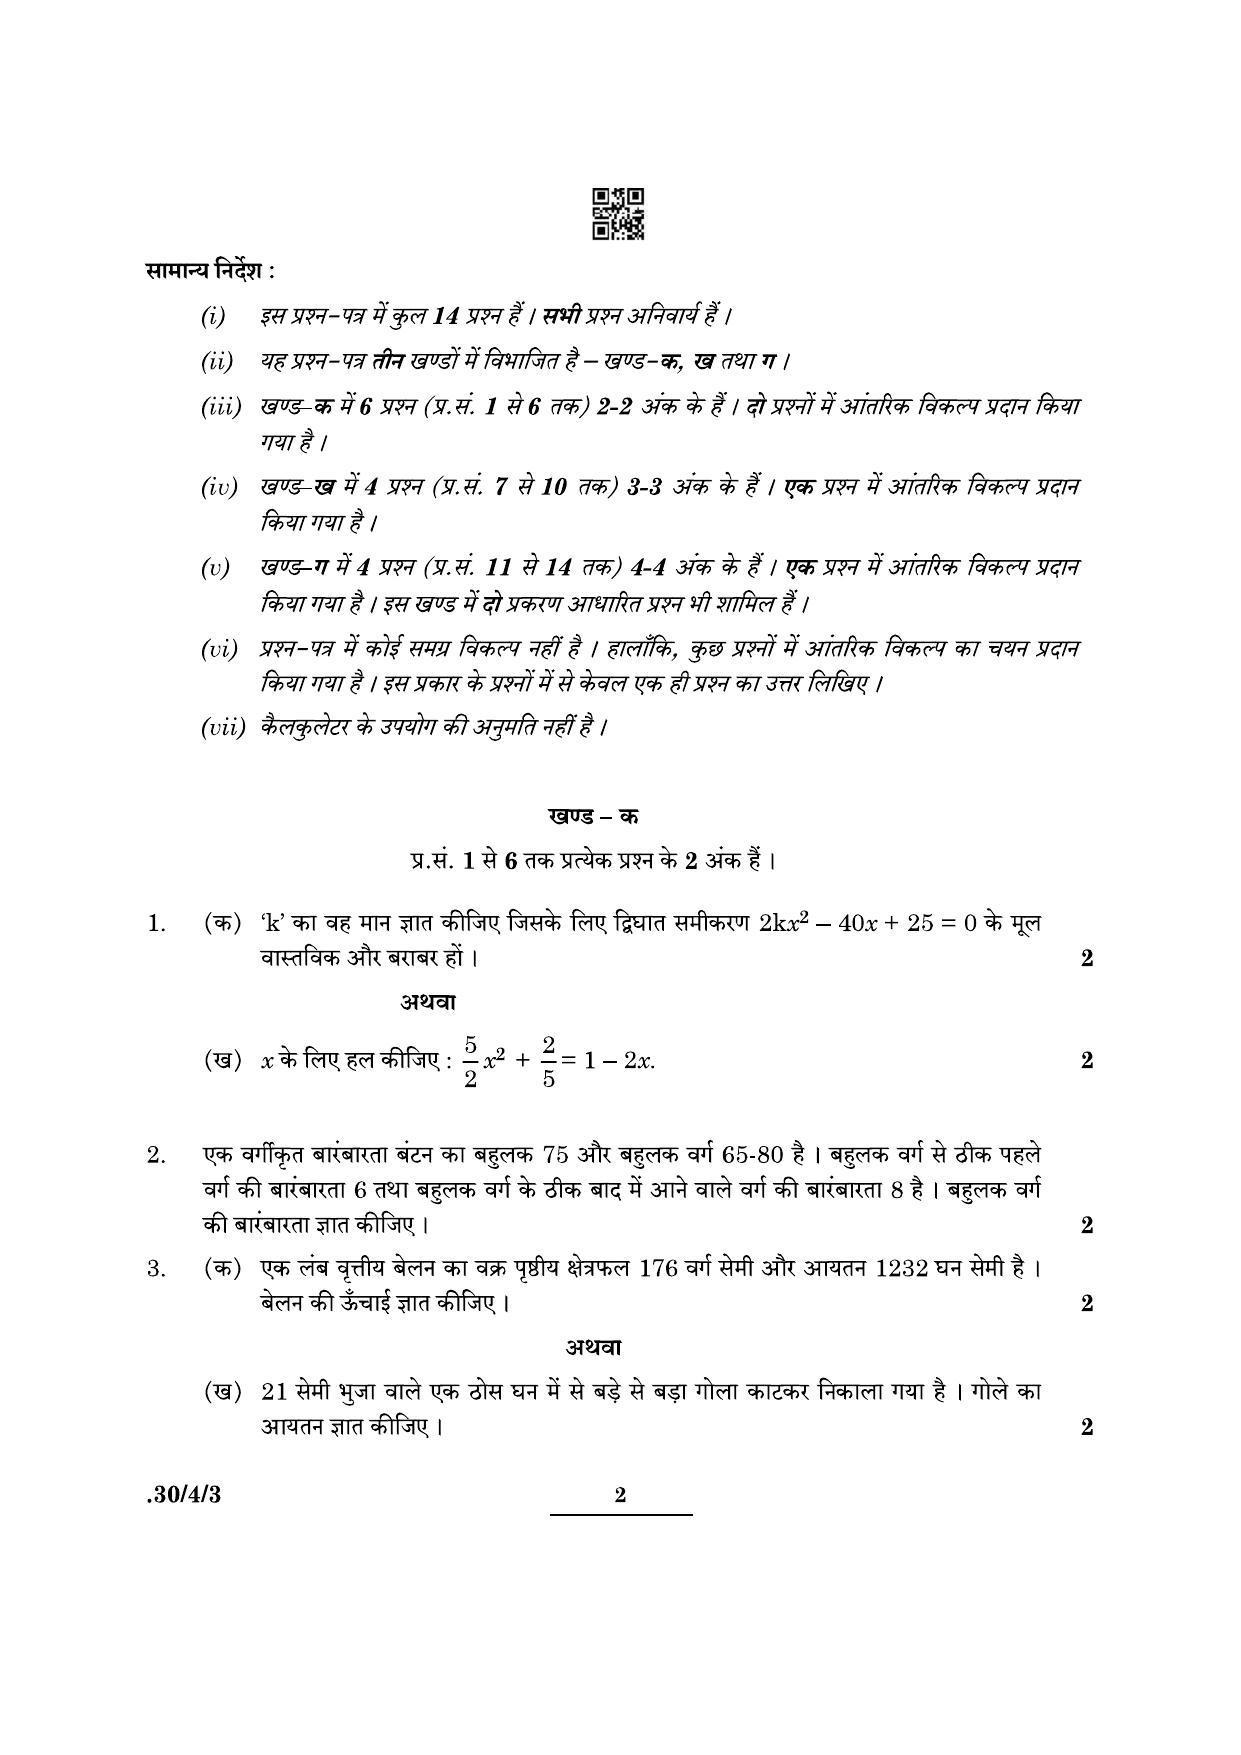 CBSE Class 10 Maths (30/4/3 - SET III) 2022 Question Paper - Page 2